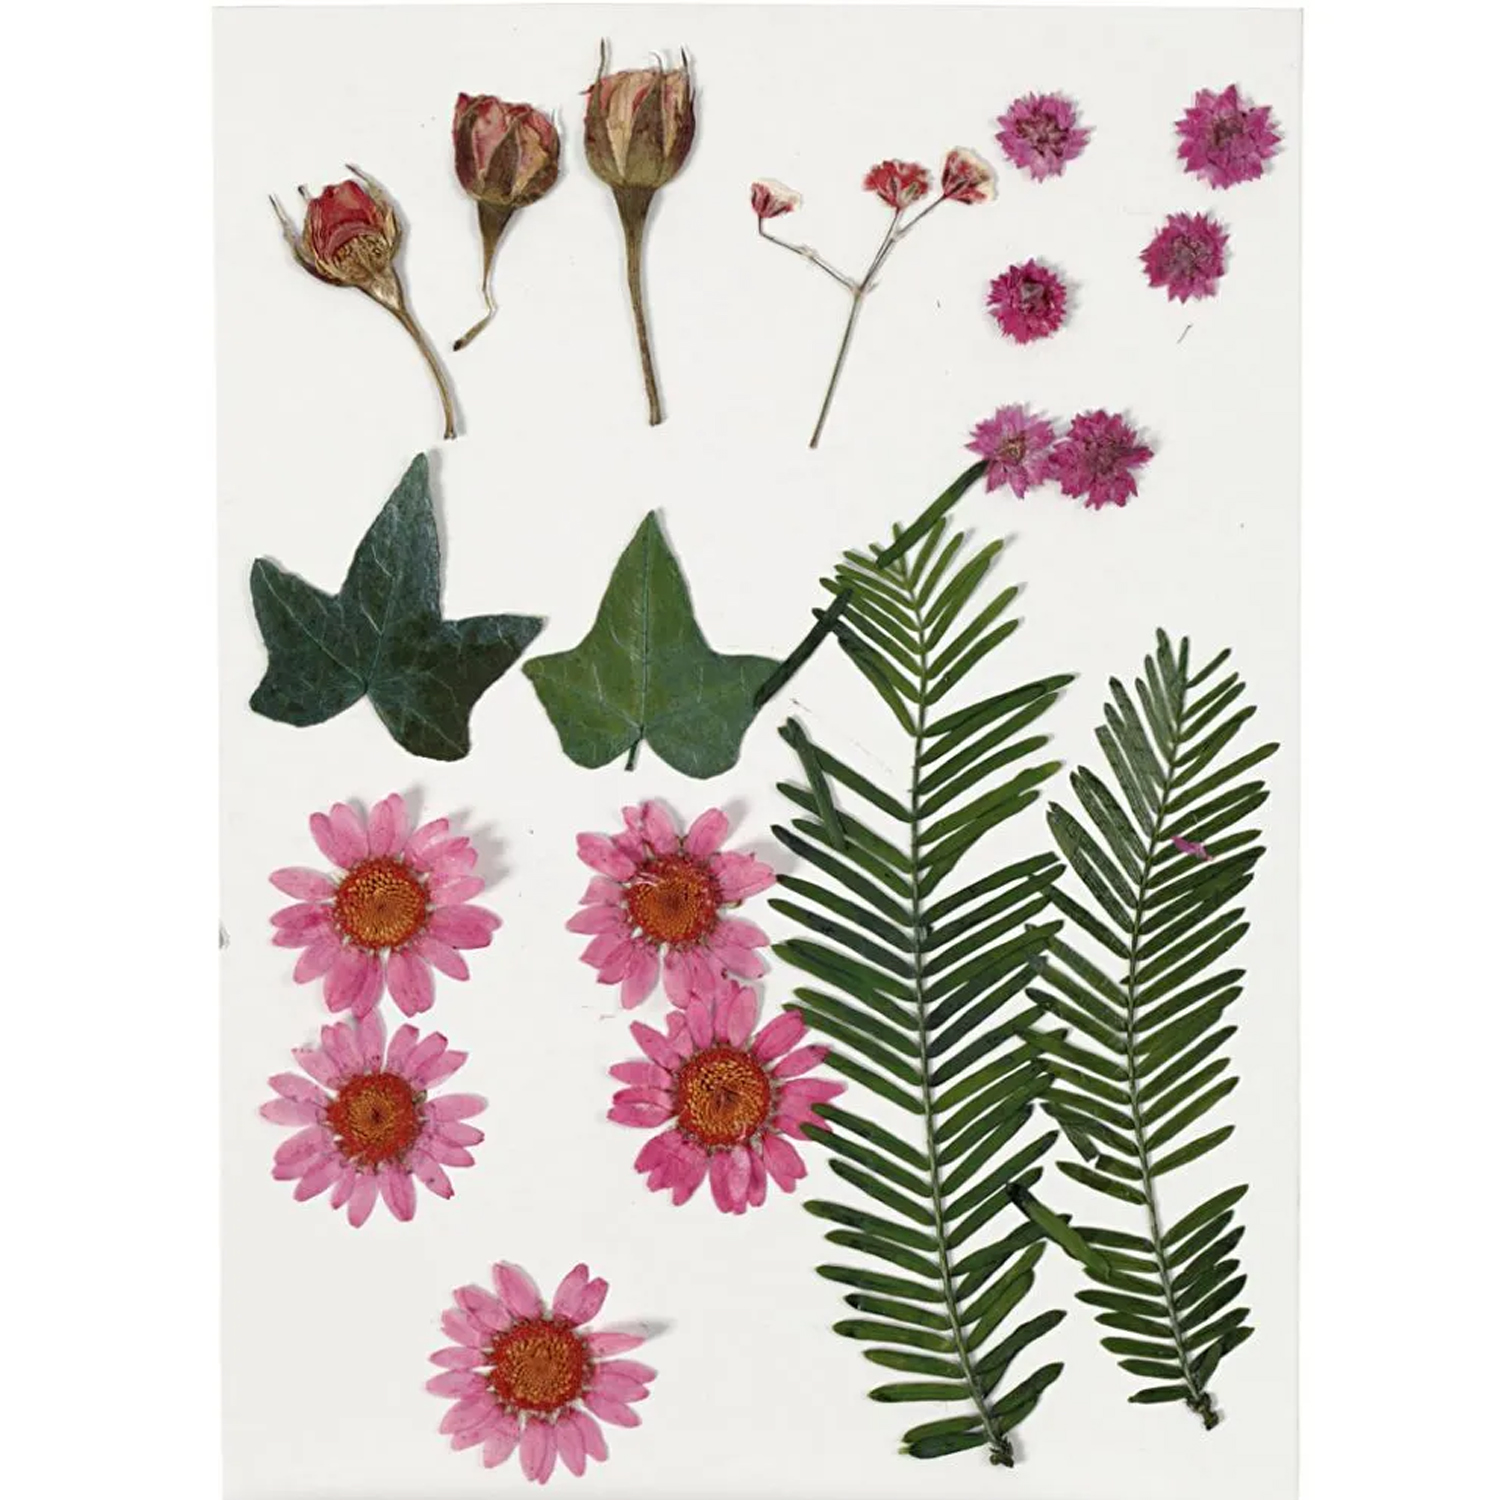 NEU Trockenblumen-, Blätter-Sortiment, flach gepresst, Rosa